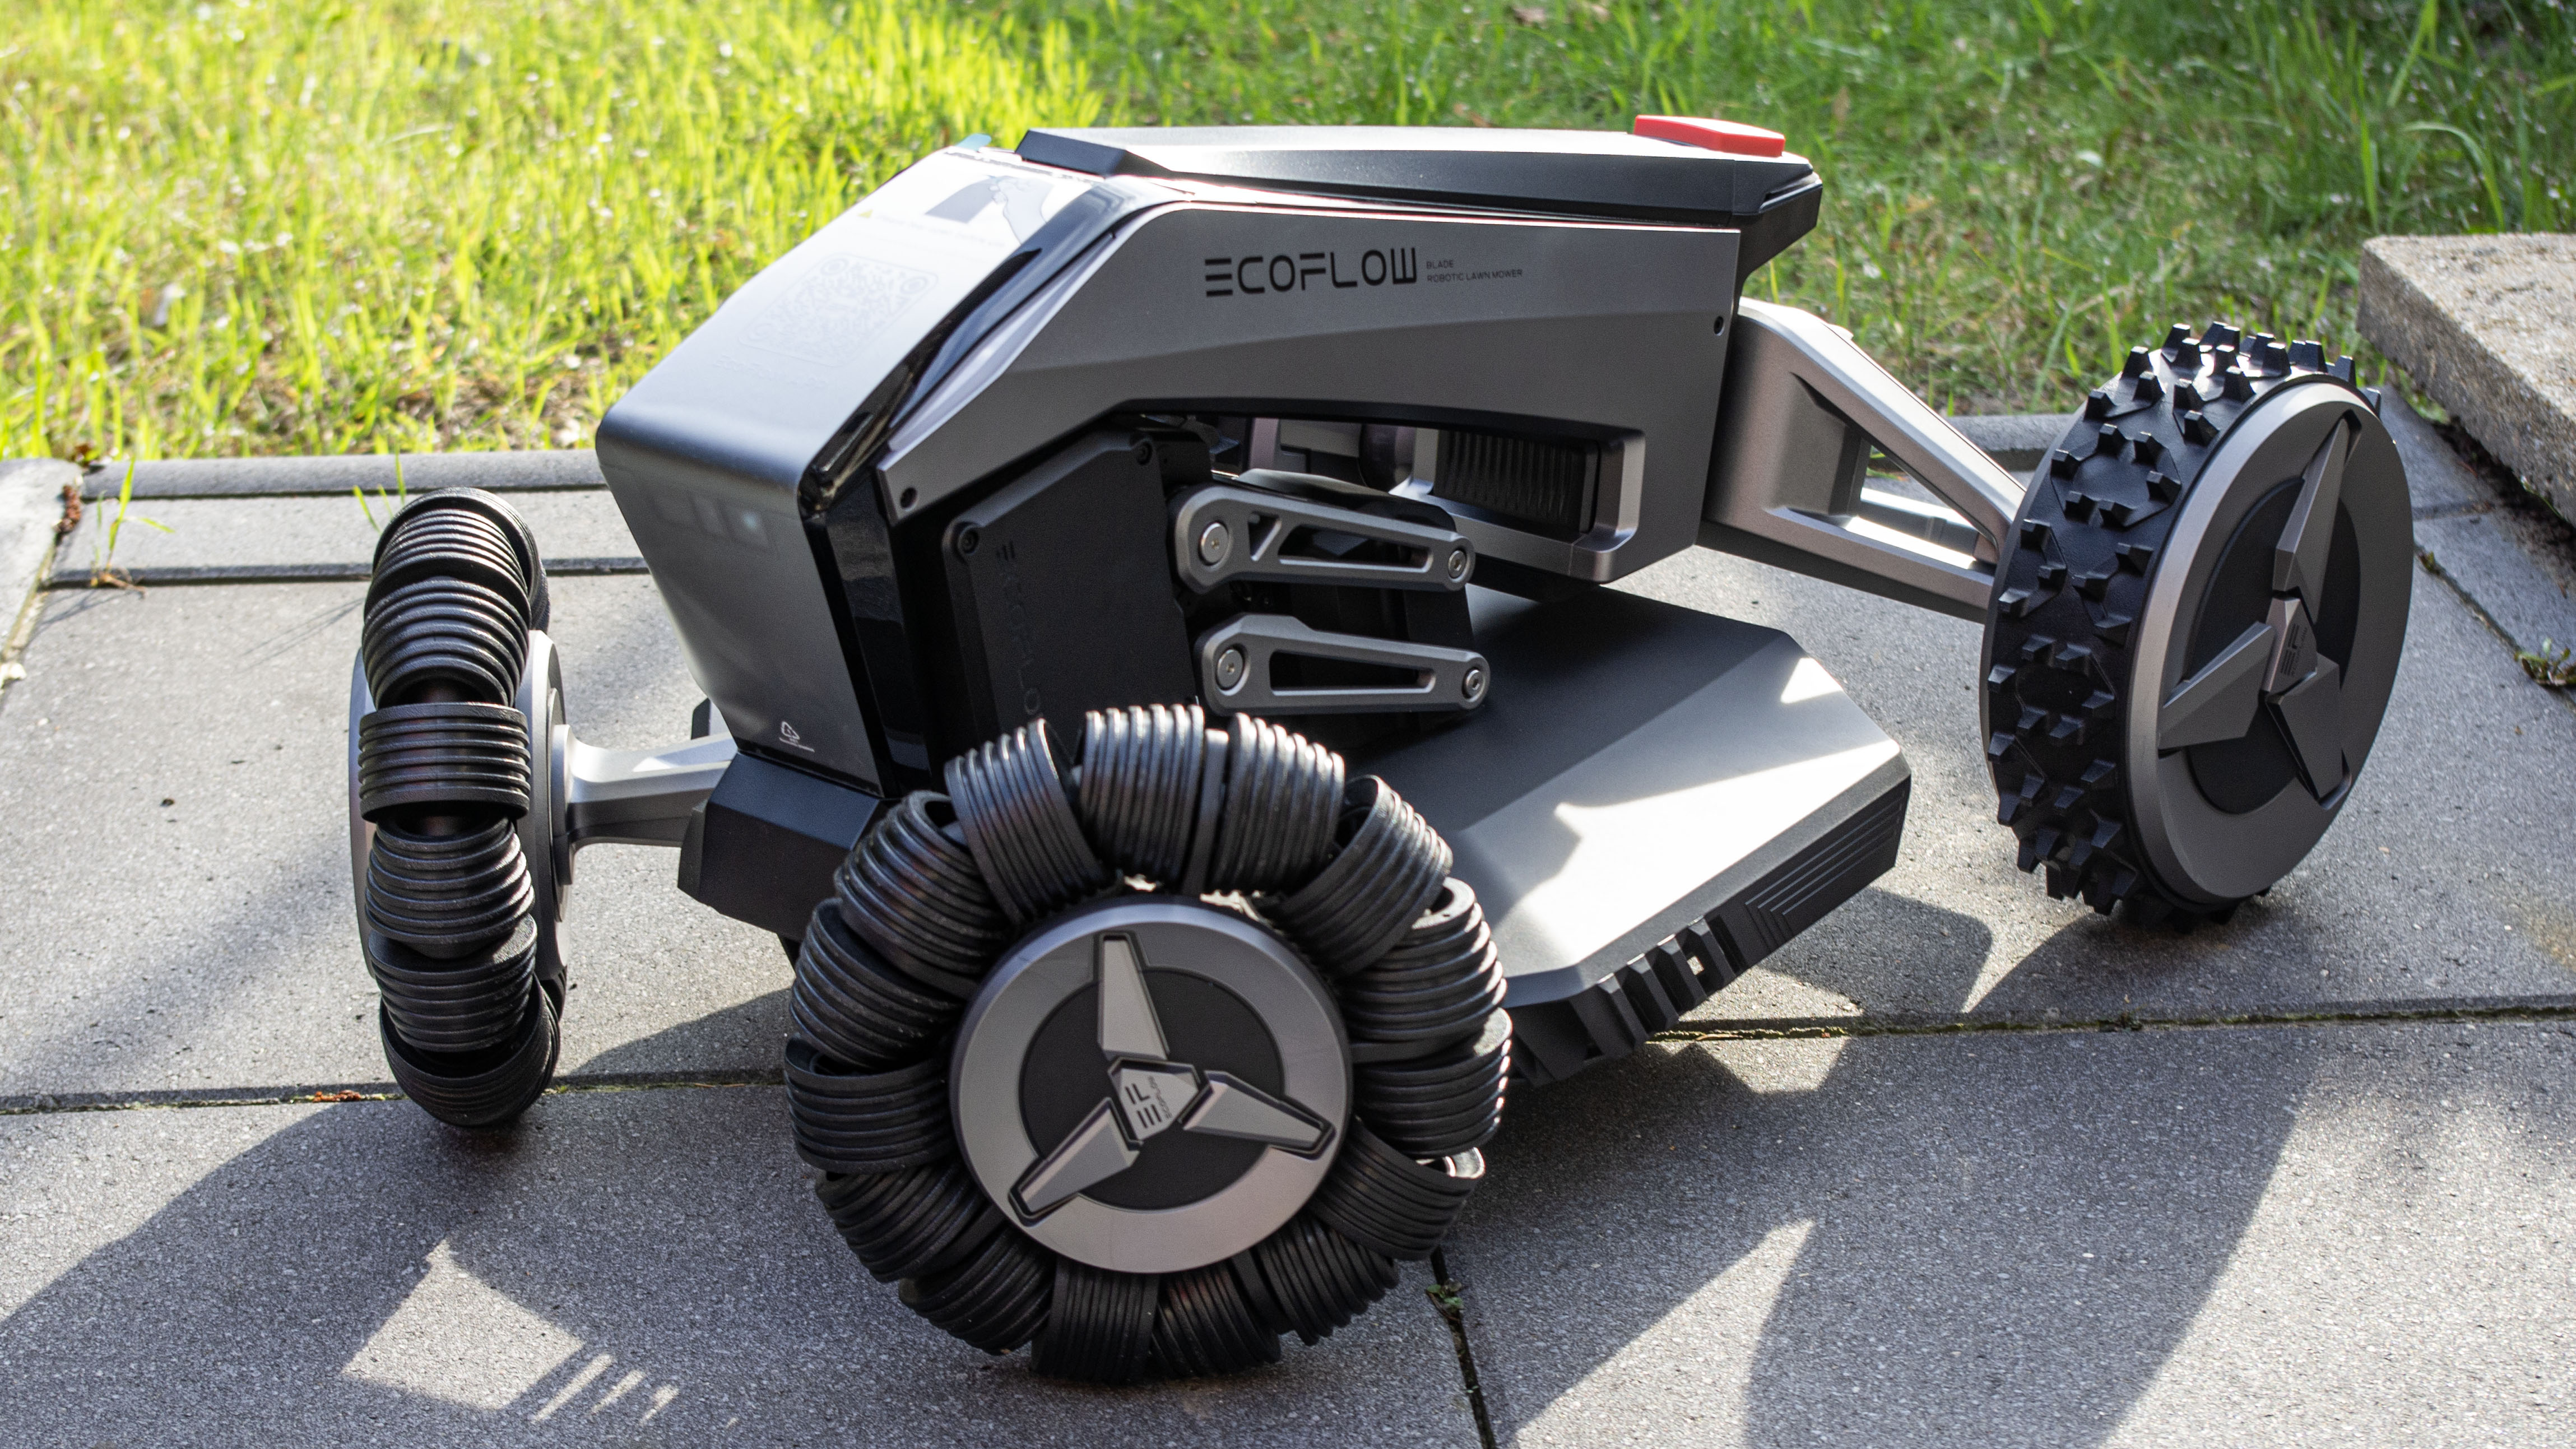 Ecoflow Blade review: A unique robotic mower